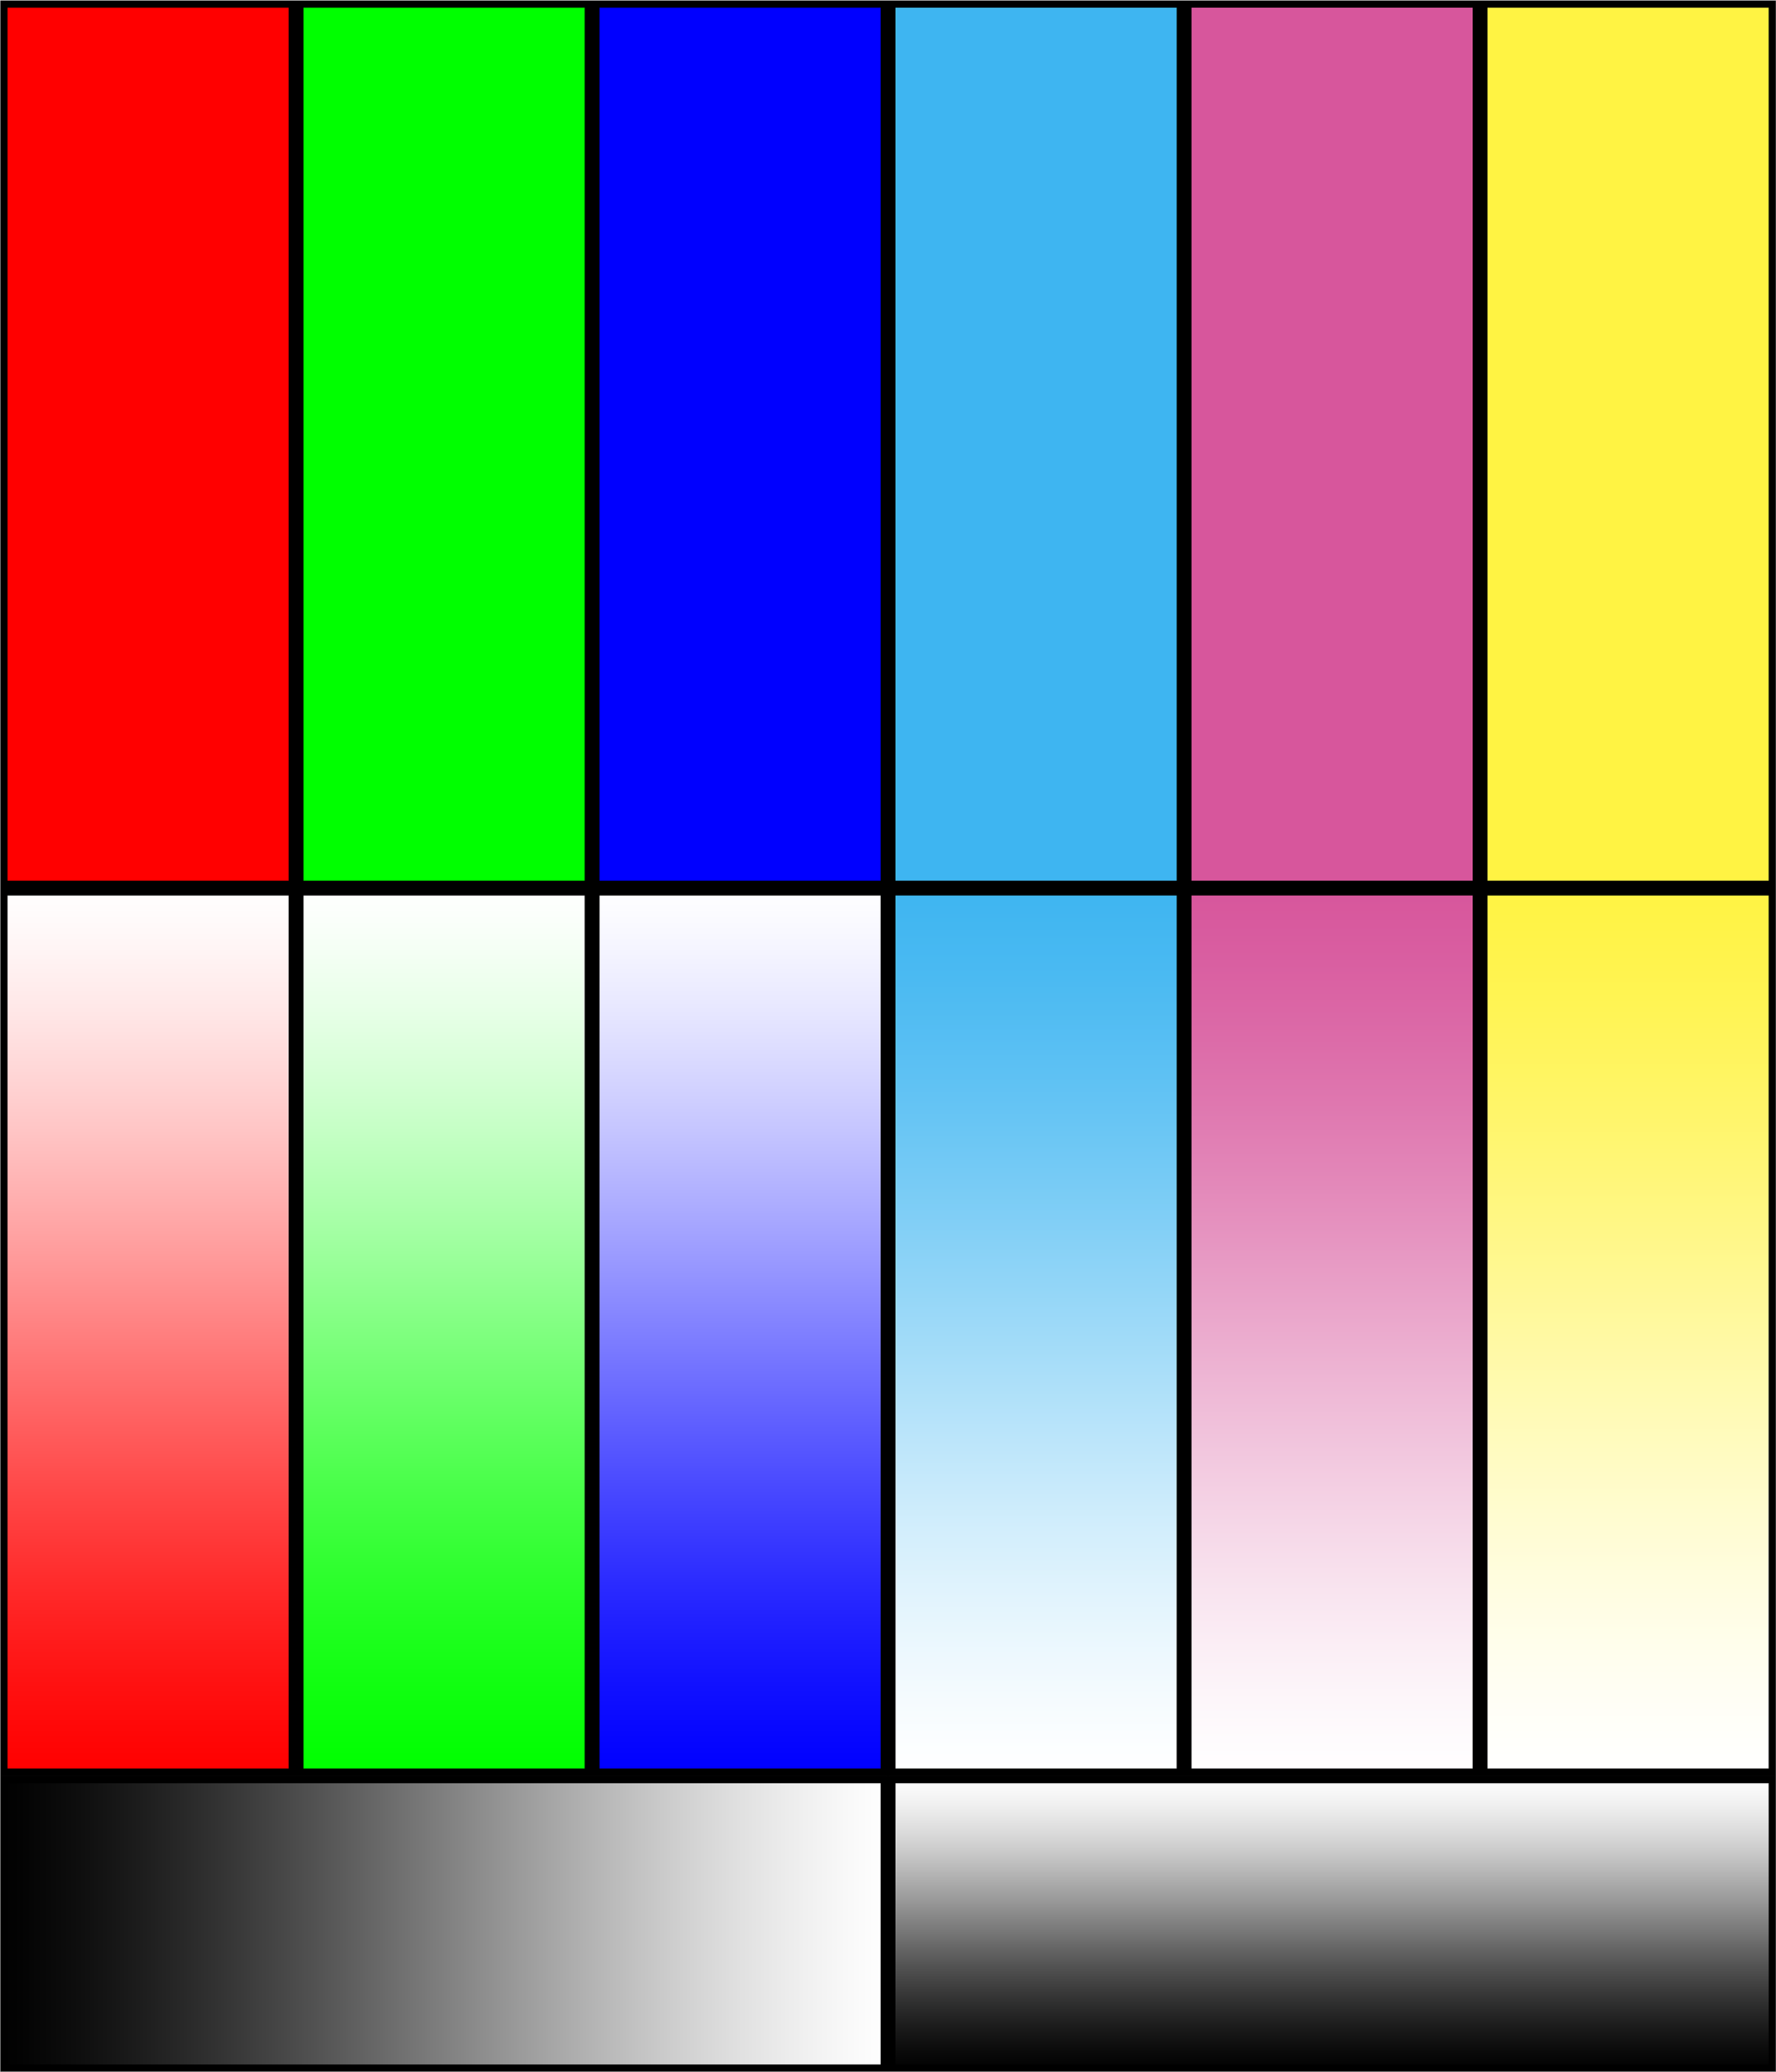 Картинка цветная для принтера. Тестовая печать принтера Эпсон. Тест принтера Эпсон 6 цвета. Тест печати Эпсон 6 цветов. Тестовая печать цветного принтера Эпсон.